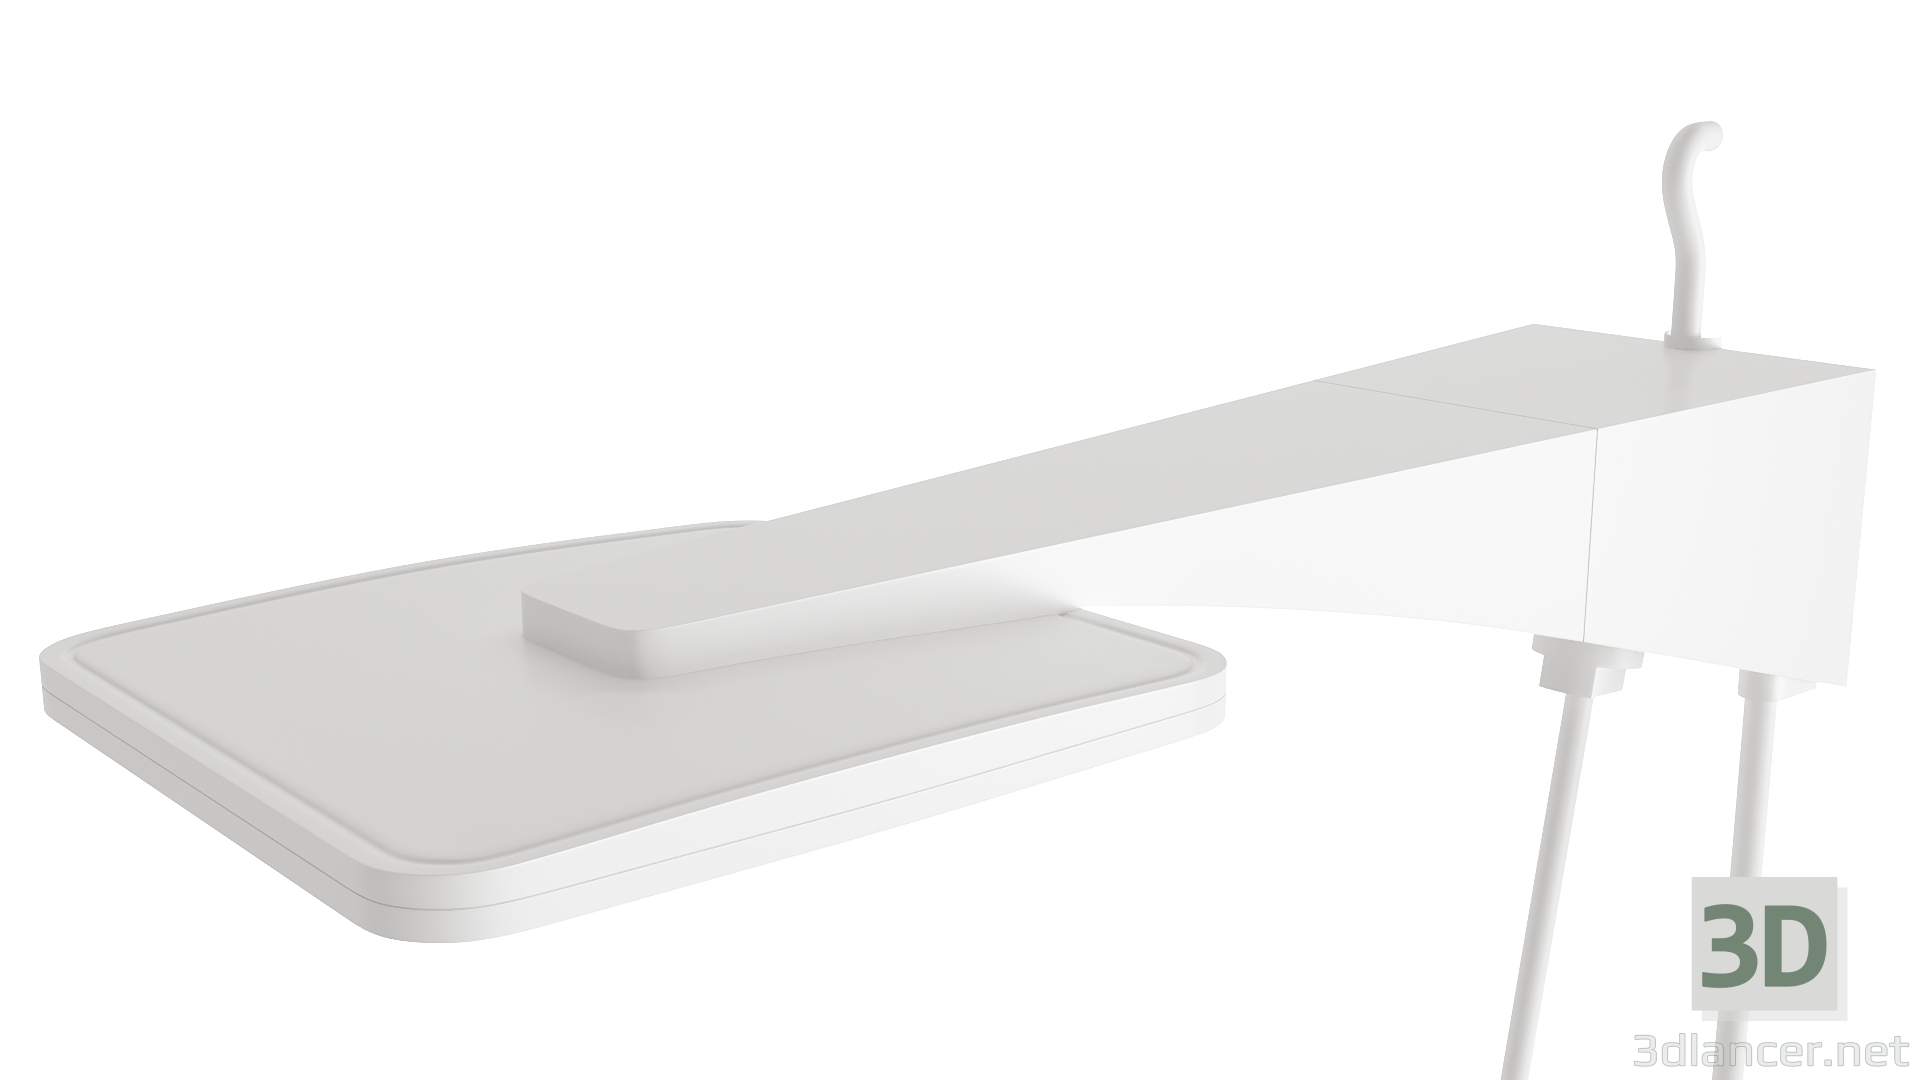 3 डी शावर - पूर्ण आकार का सफेद इलेक्ट्रिक शावर मॉडल खरीद - रेंडर